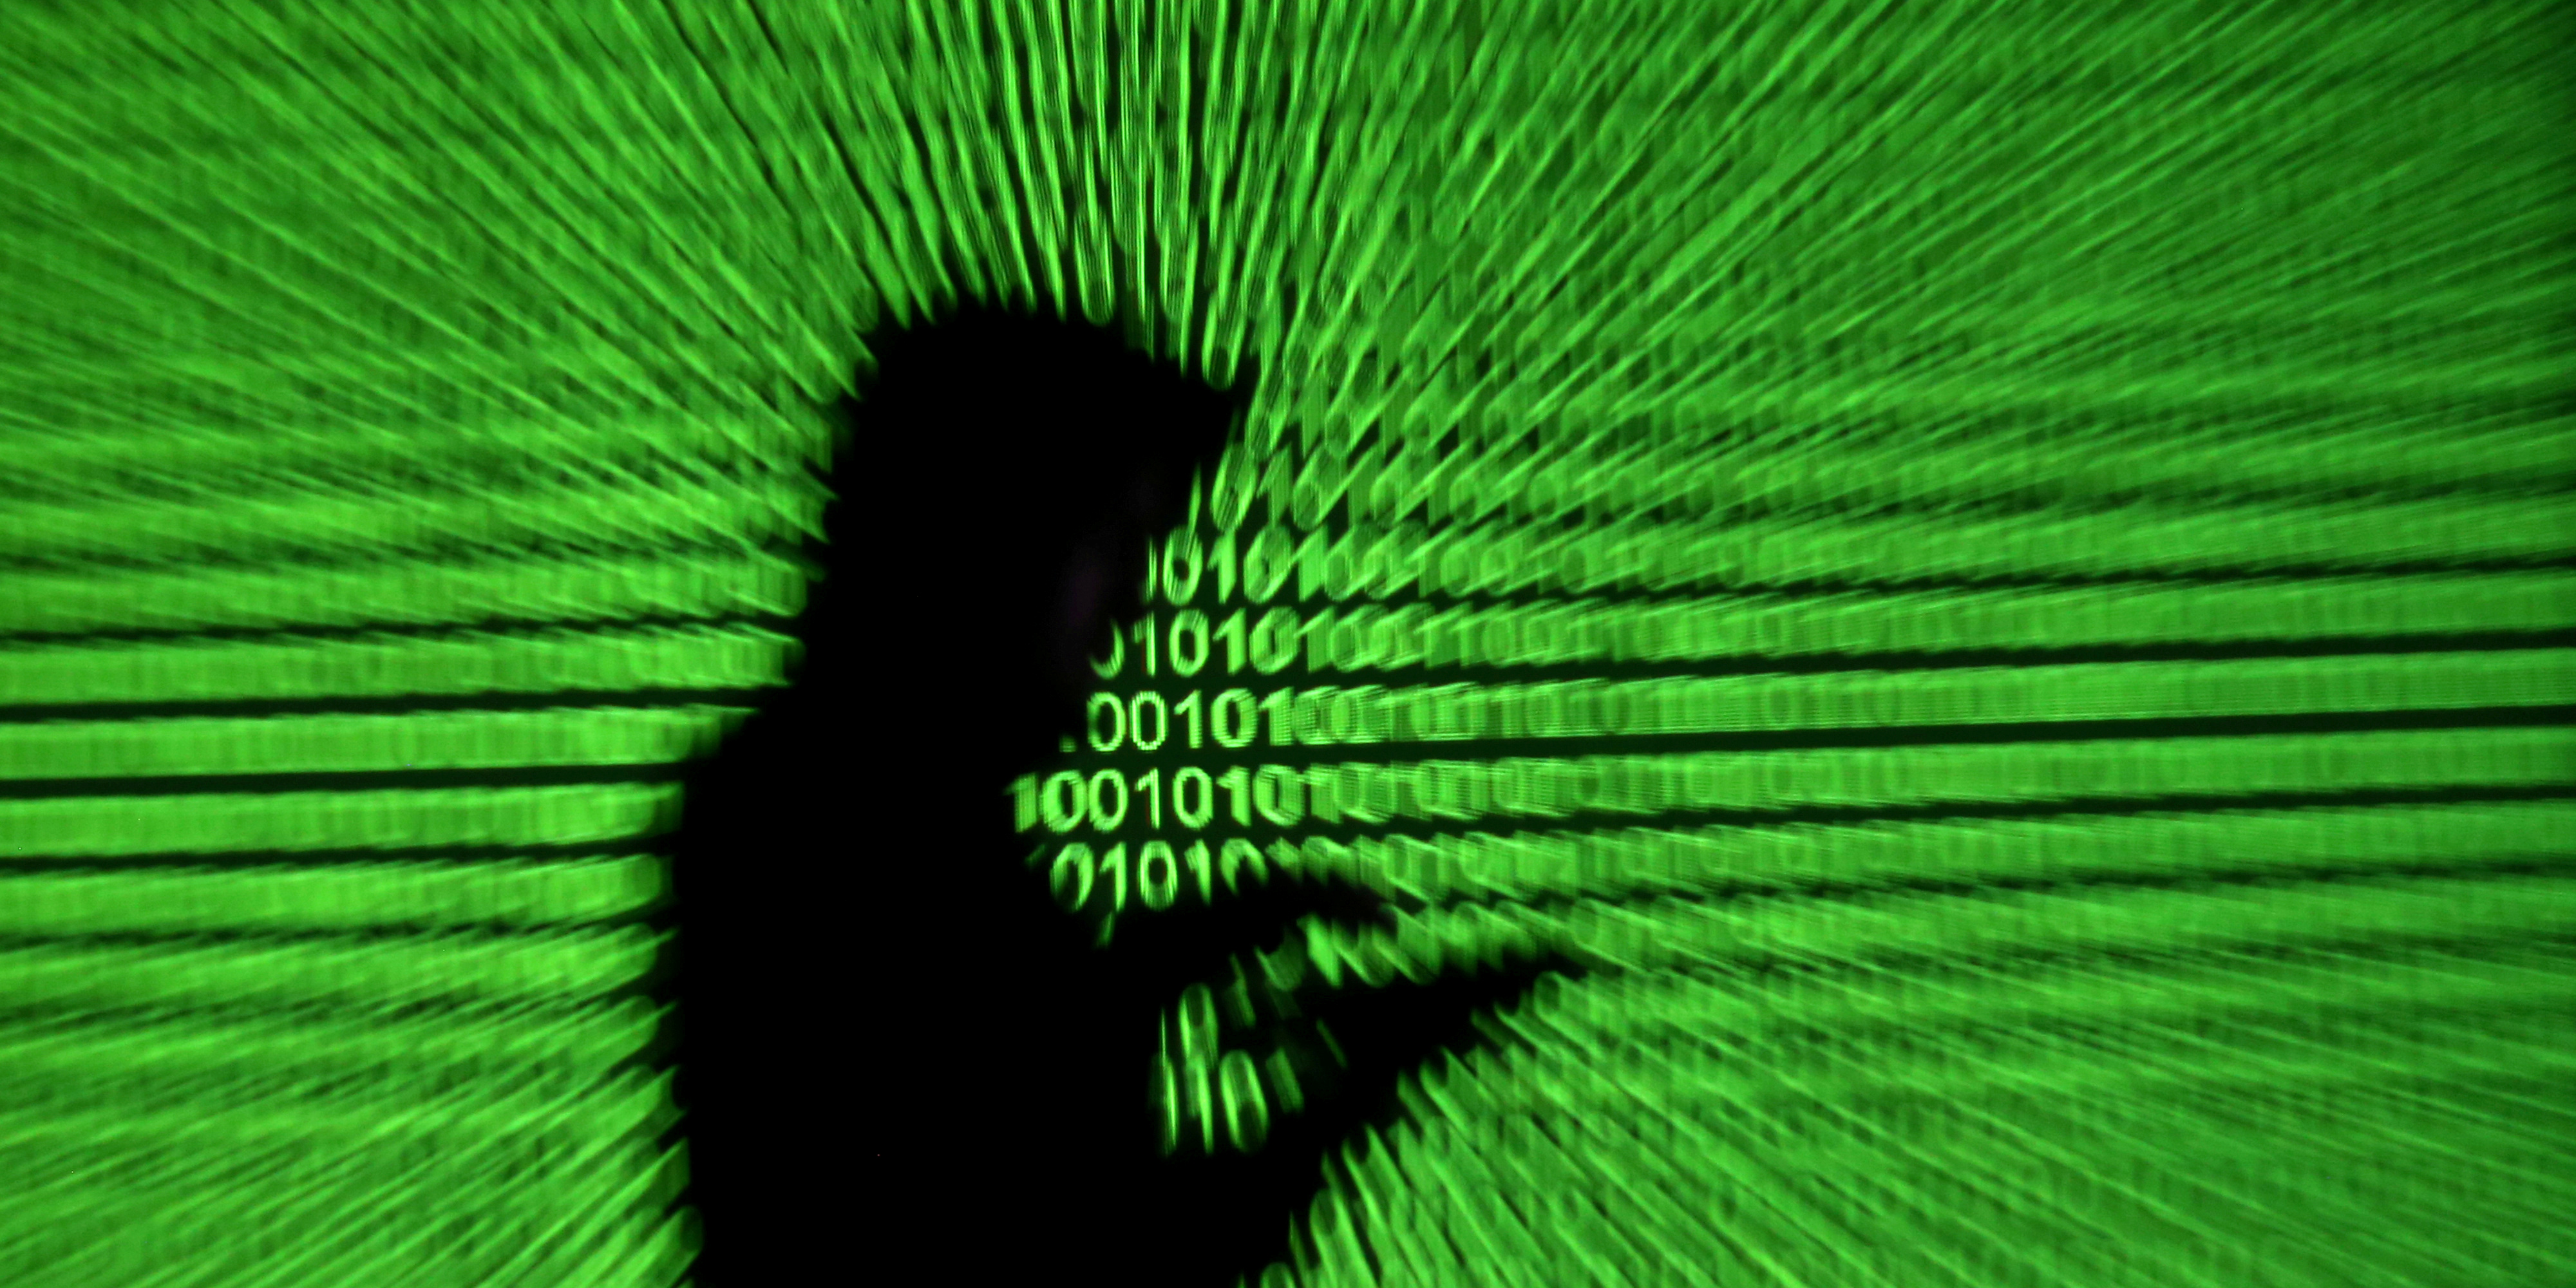 Au Canada, un piratage massif de comptes de services gouvernementaux en ligne